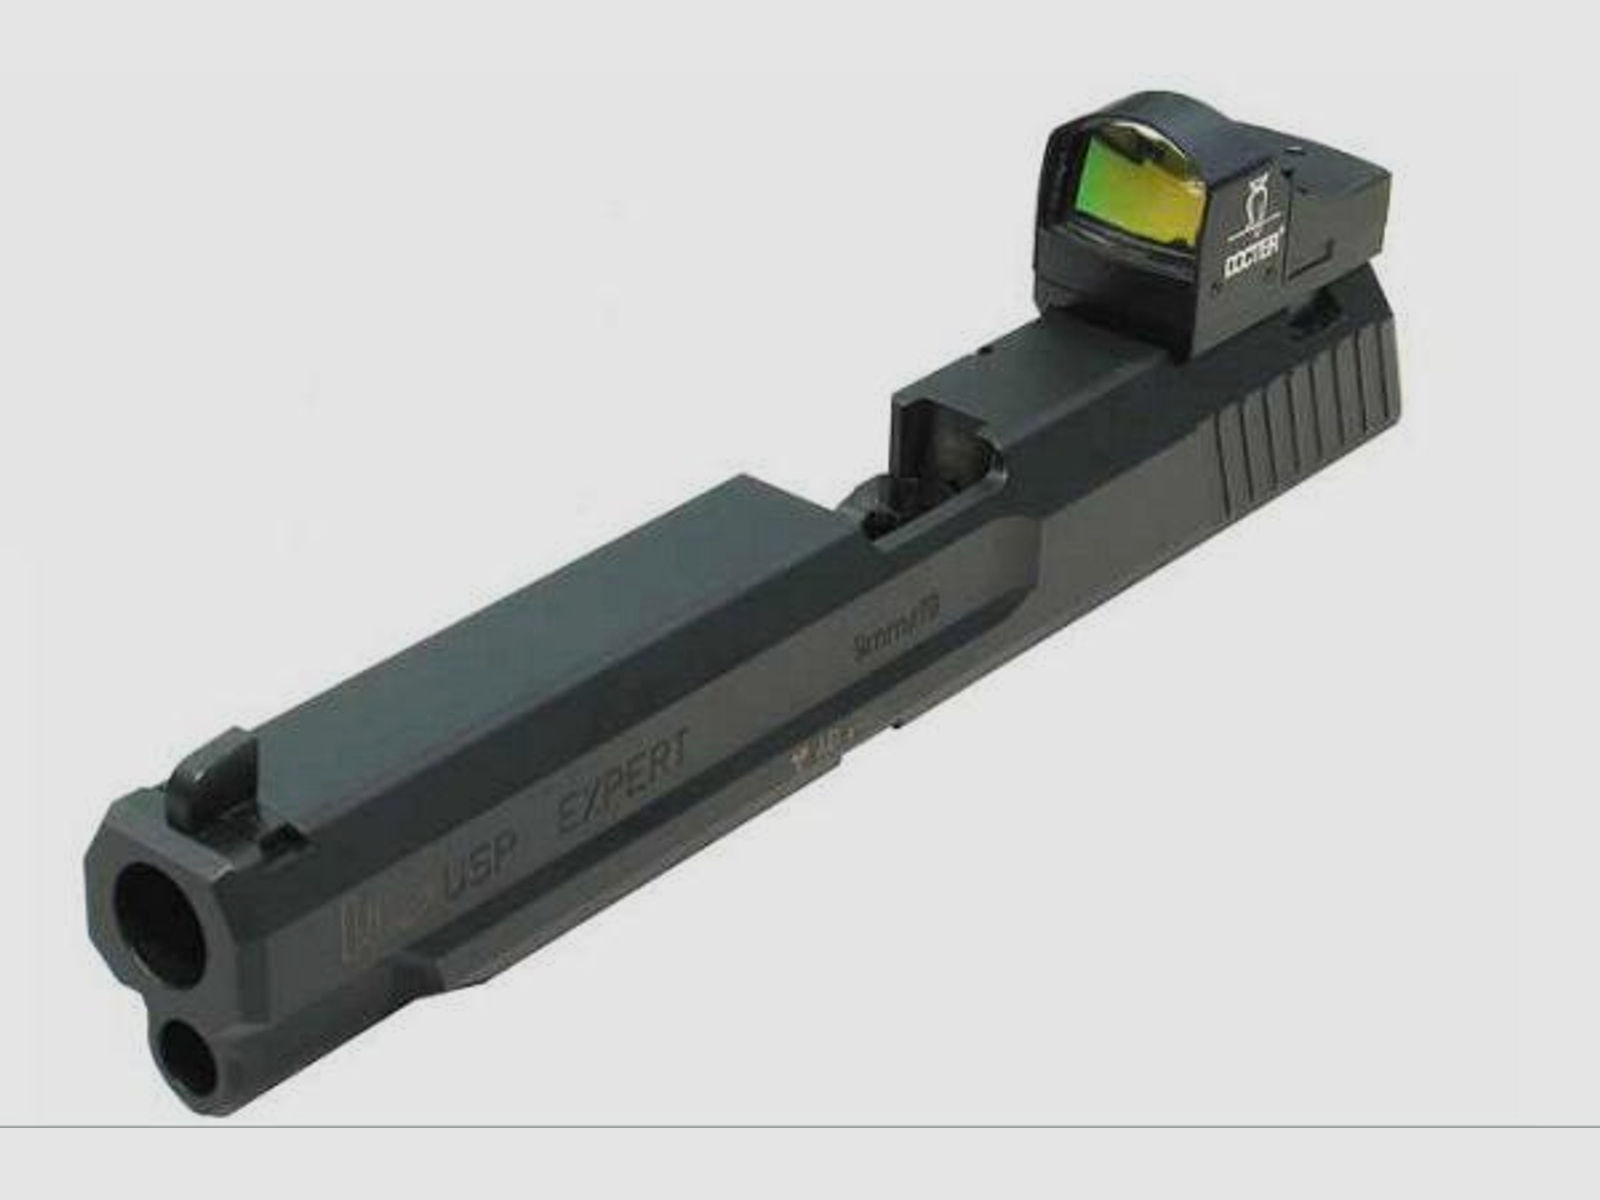 HENNEBERGER Montage f. Leuchtpunktvisier Montageplatte Docter Sight f. Glock  -45Auto/10mm